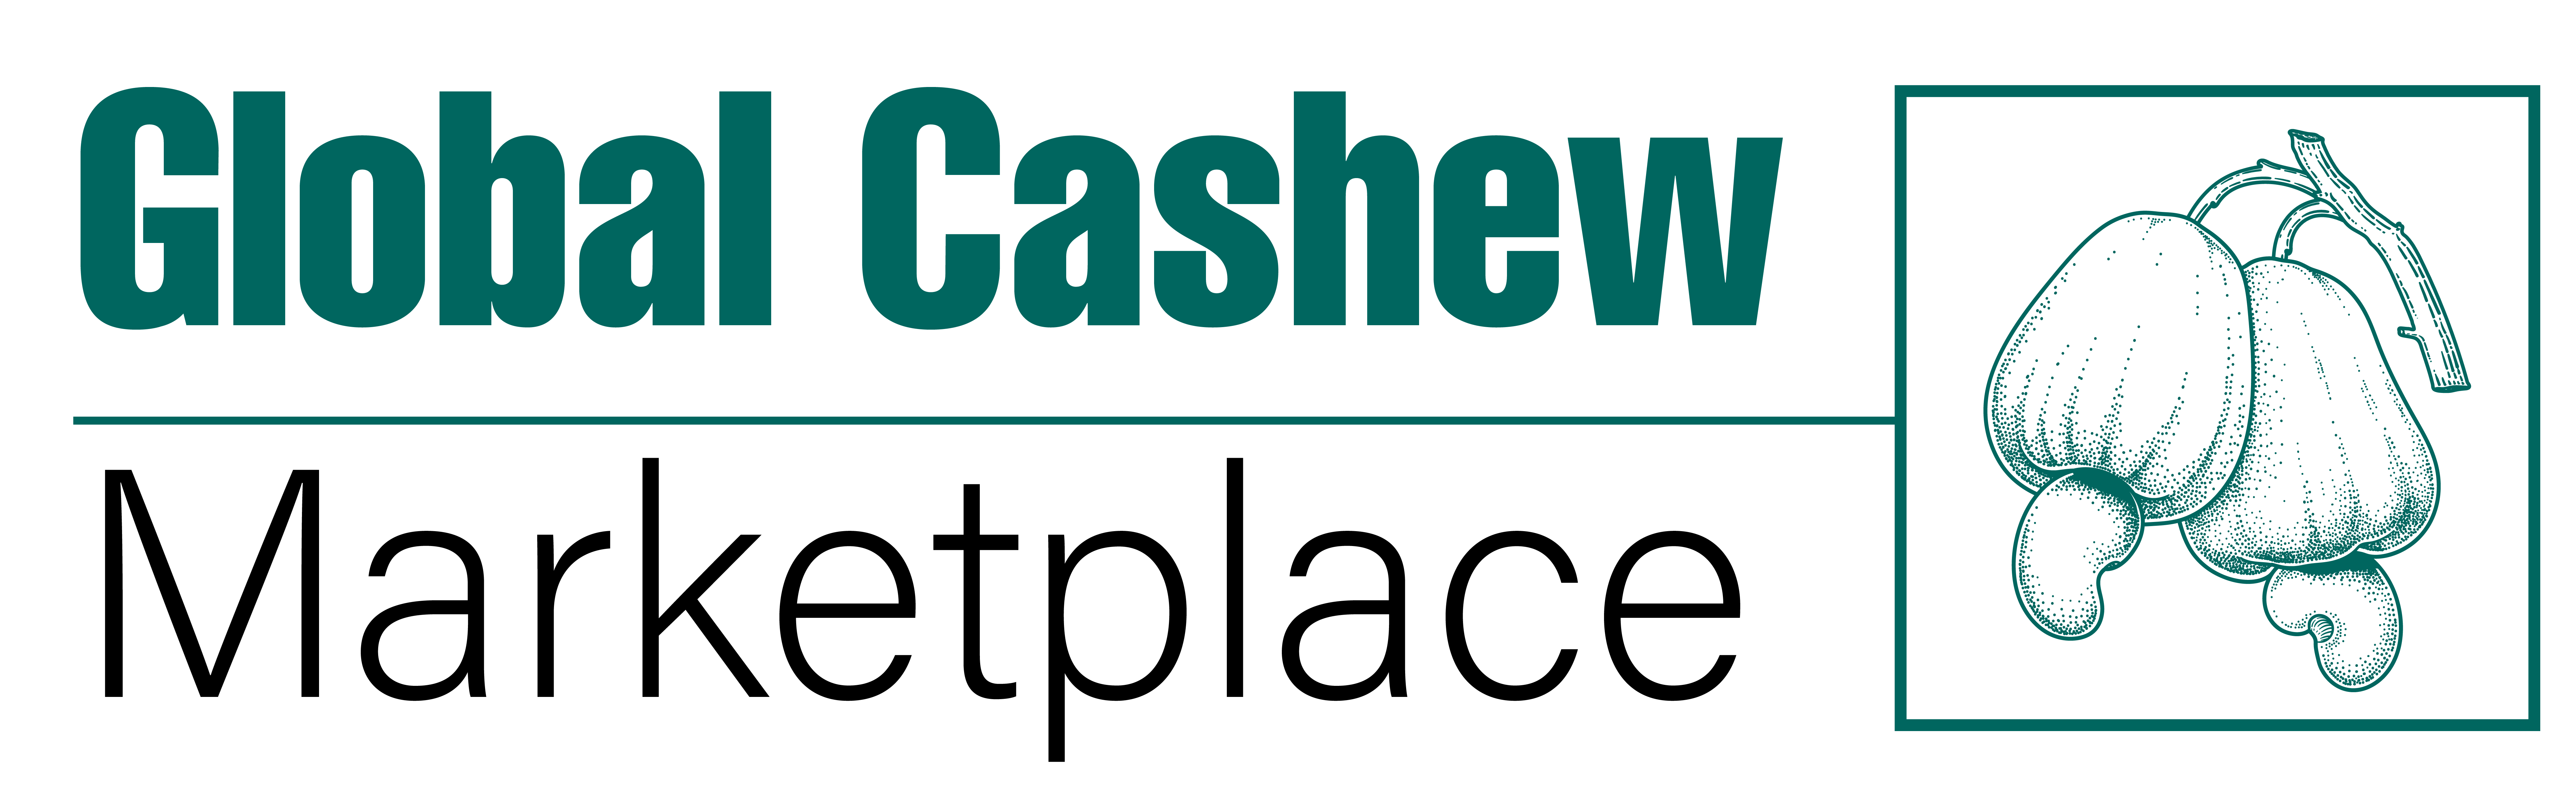 Global Cashew Marketplace, The World's Largest Online Cashew Marketplace